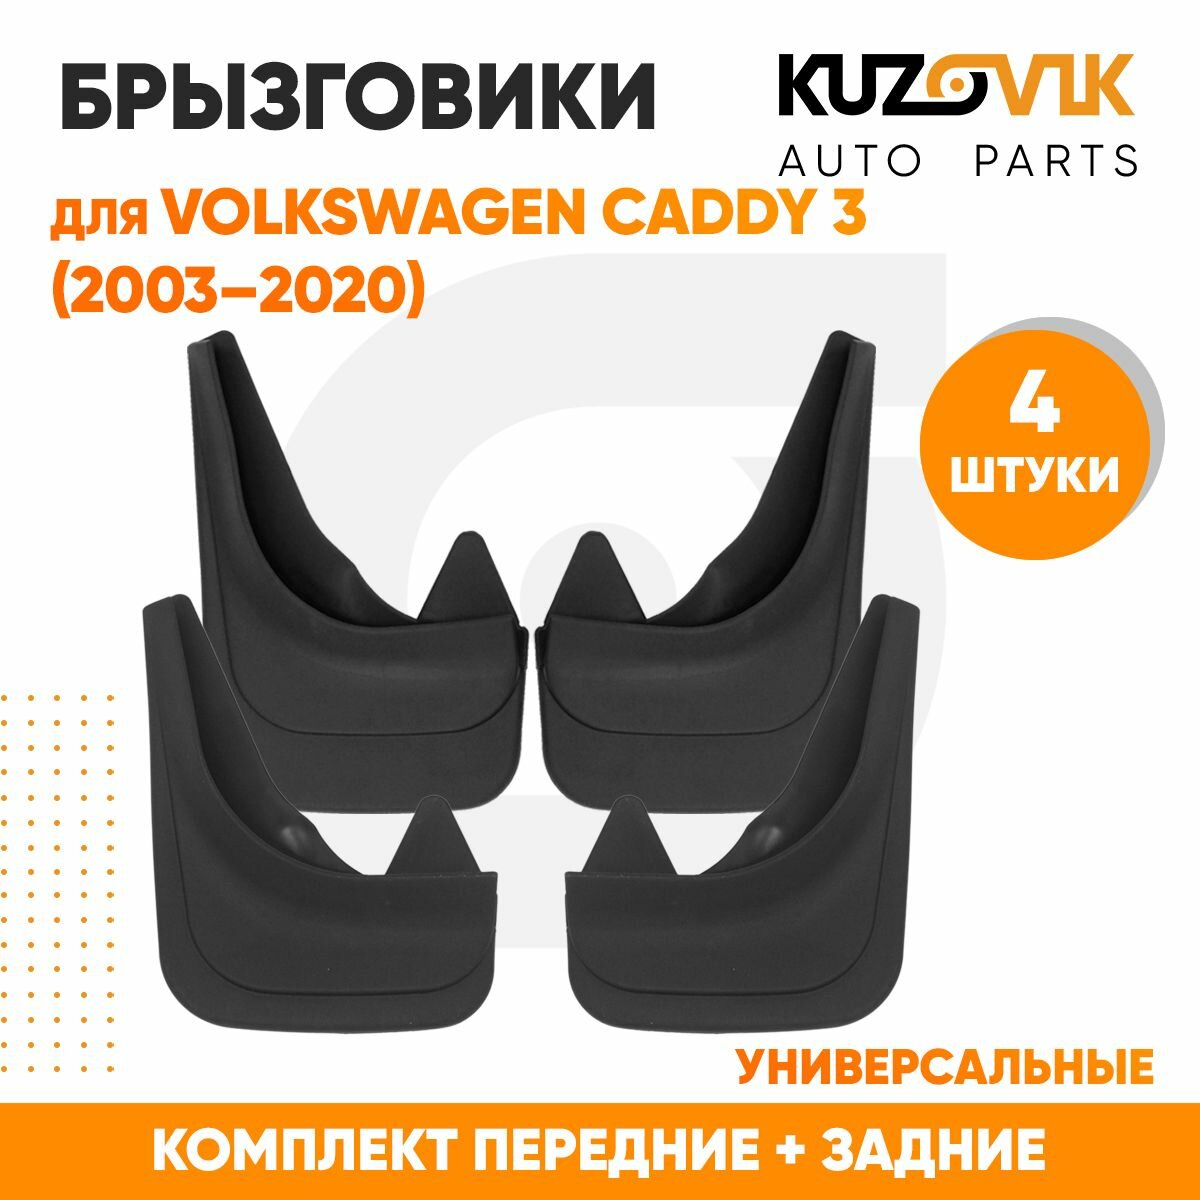 Брызговики универсальные для Фольксваген Кедди Volkswagen Caddy 3 (2003-2020) передние + задние резиновые комплект 4 штуки